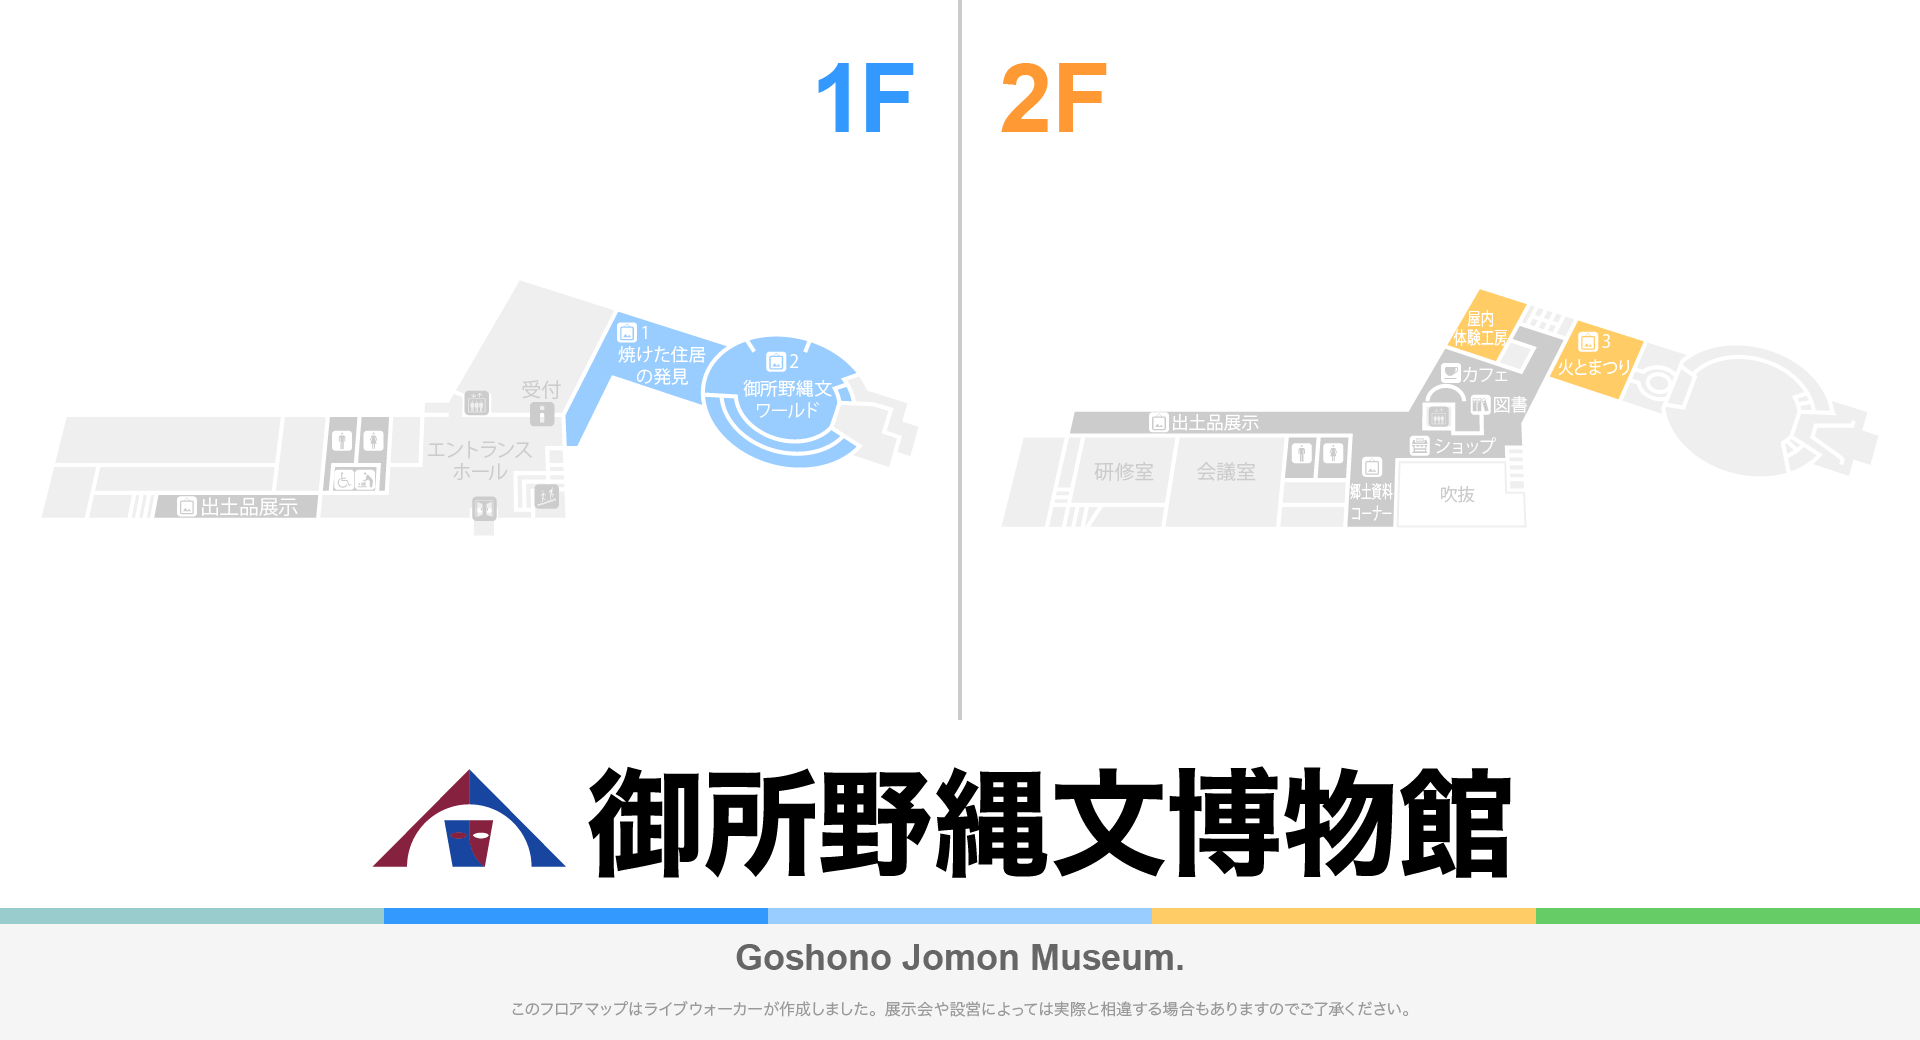 御所野縄文博物館のフロアマップ